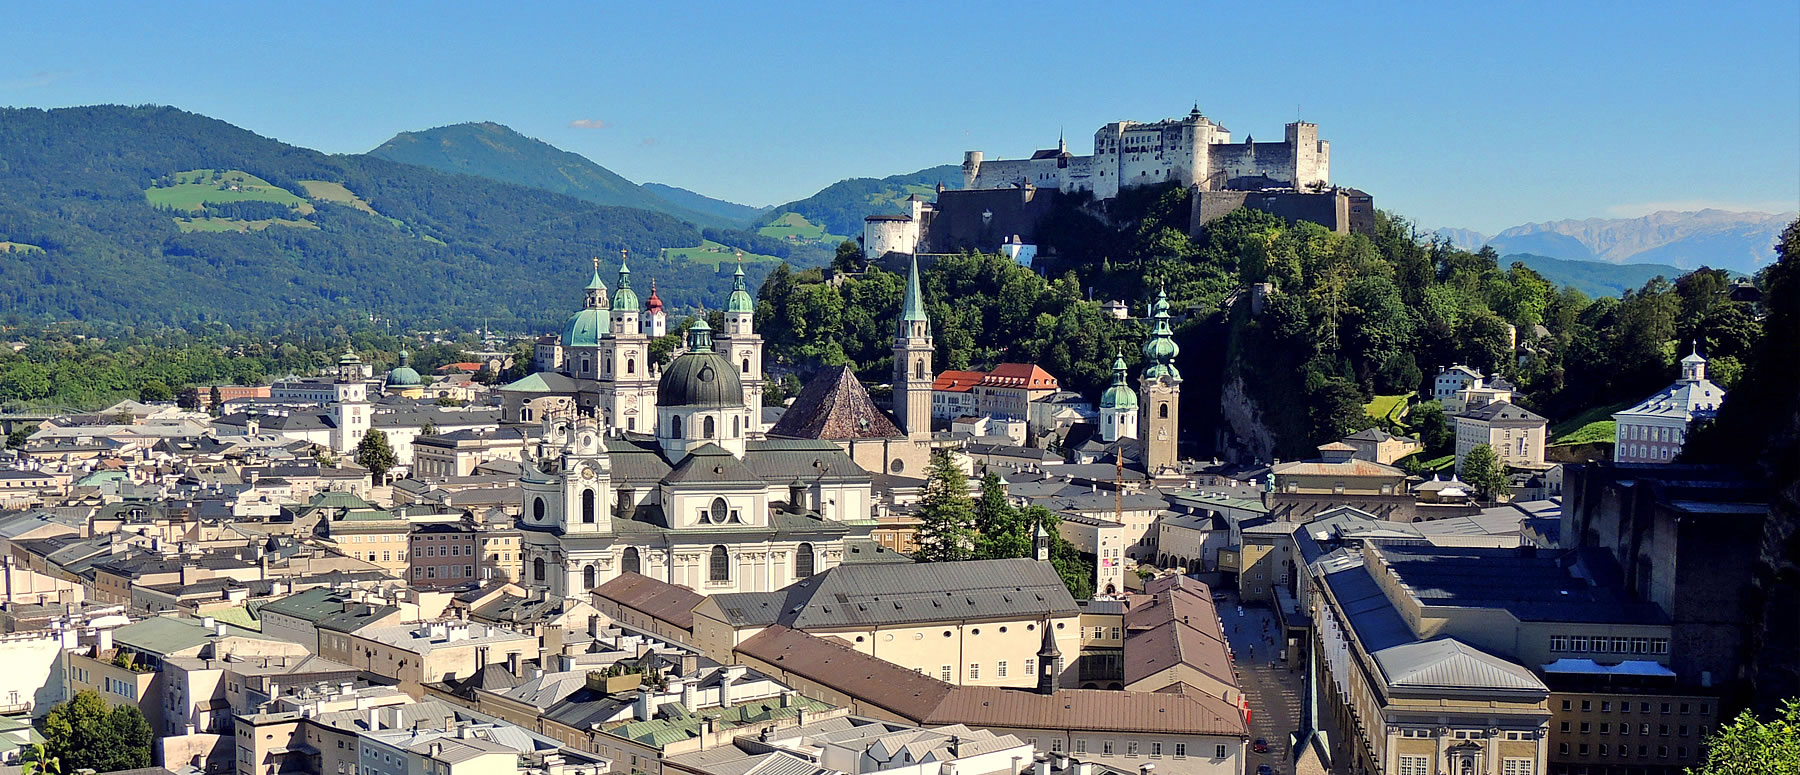 Panorama Stadt Salzburg mit der Burg, Blechächer, Altstadt